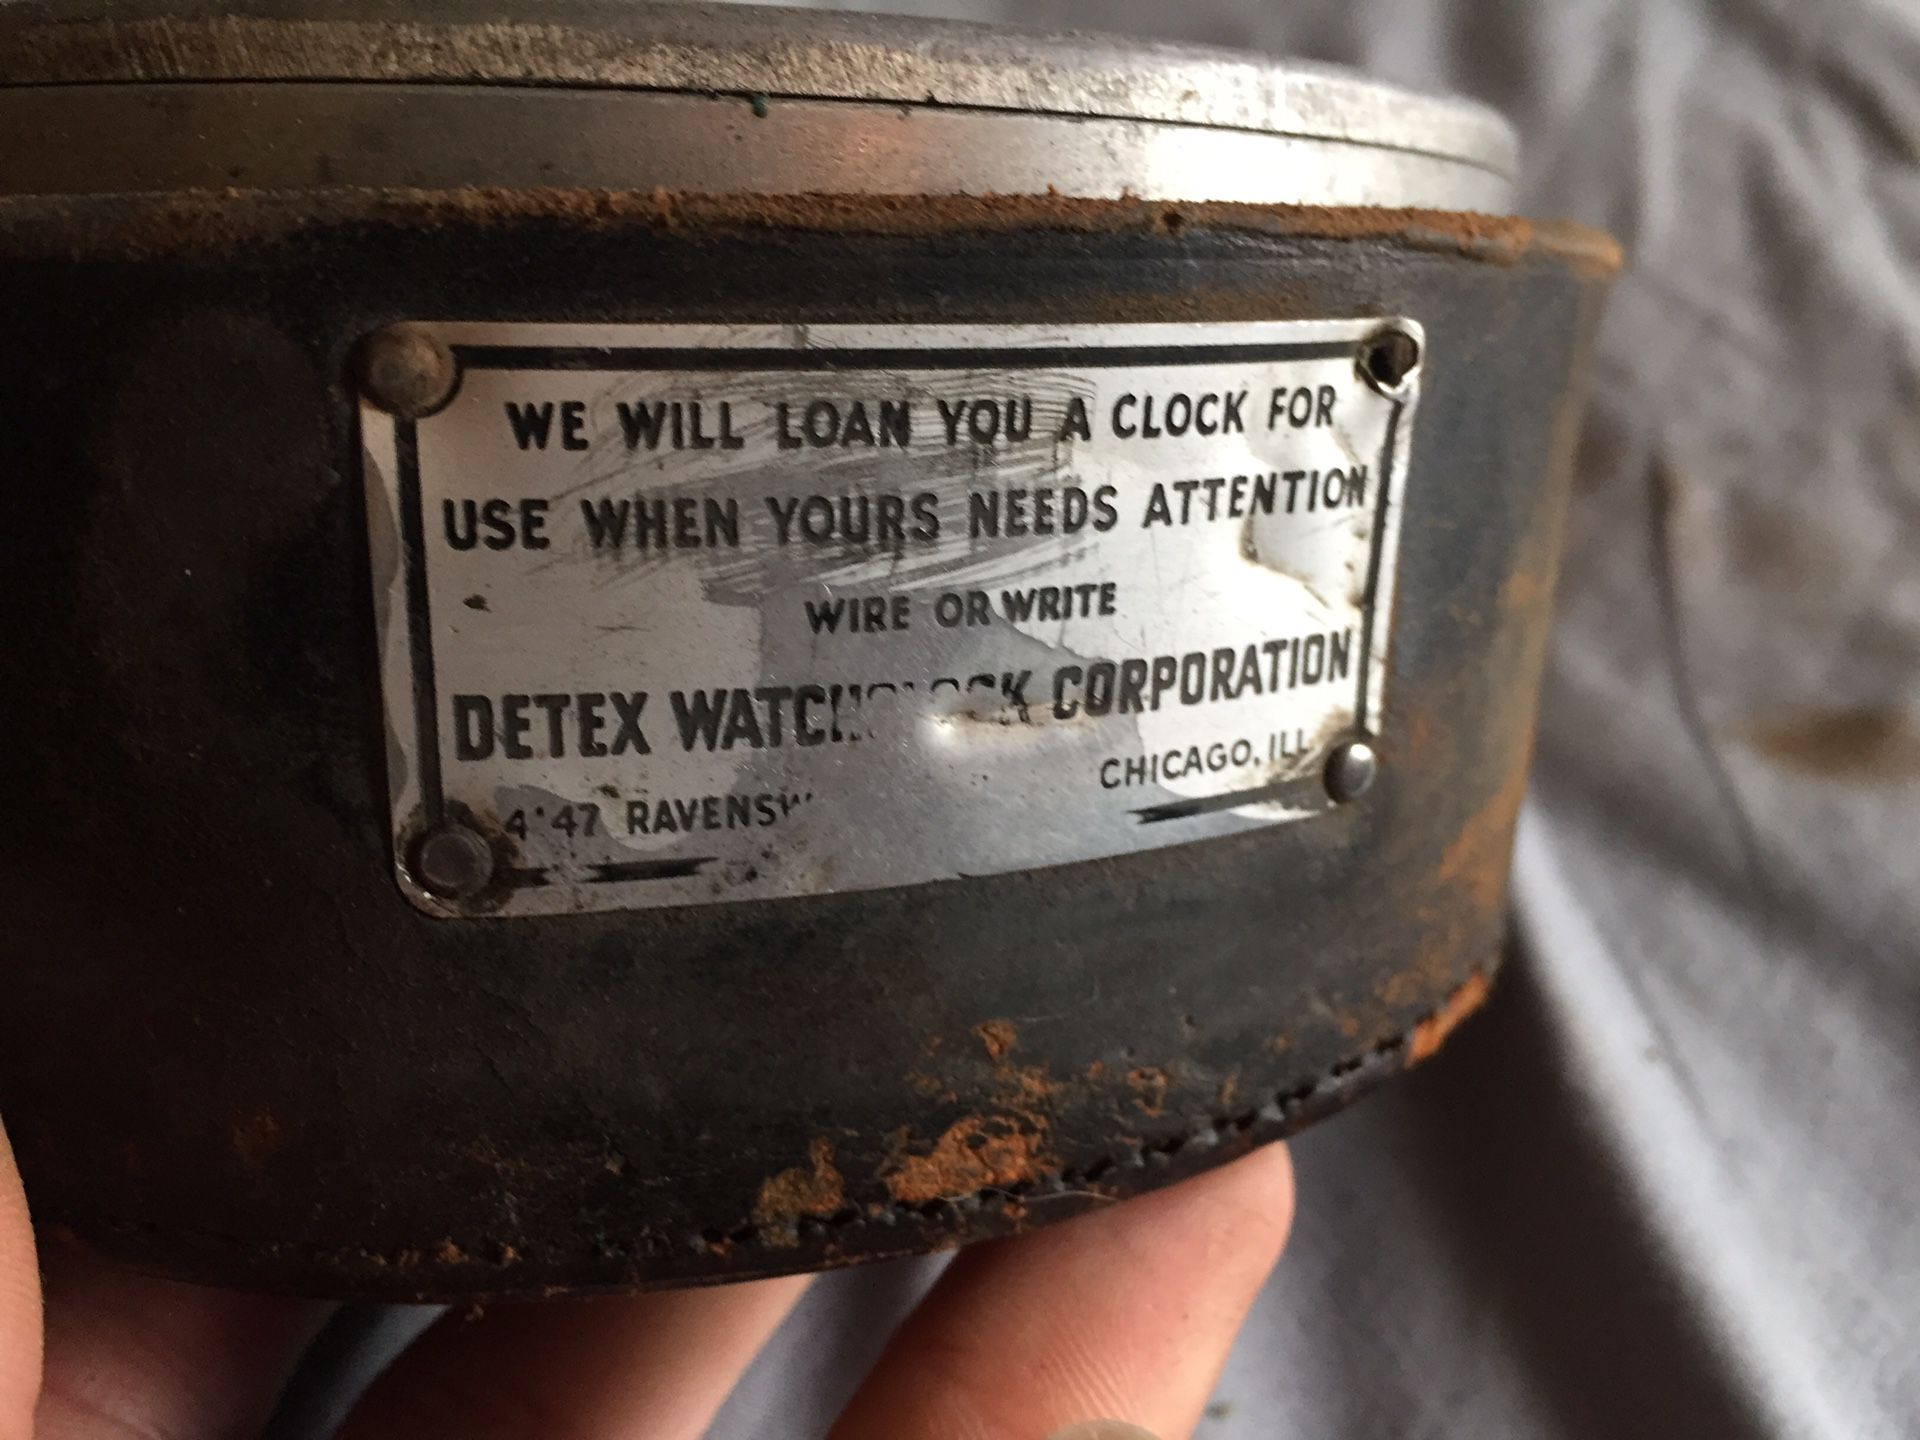 Vintage antique Detex Alert night watchman‘s clock